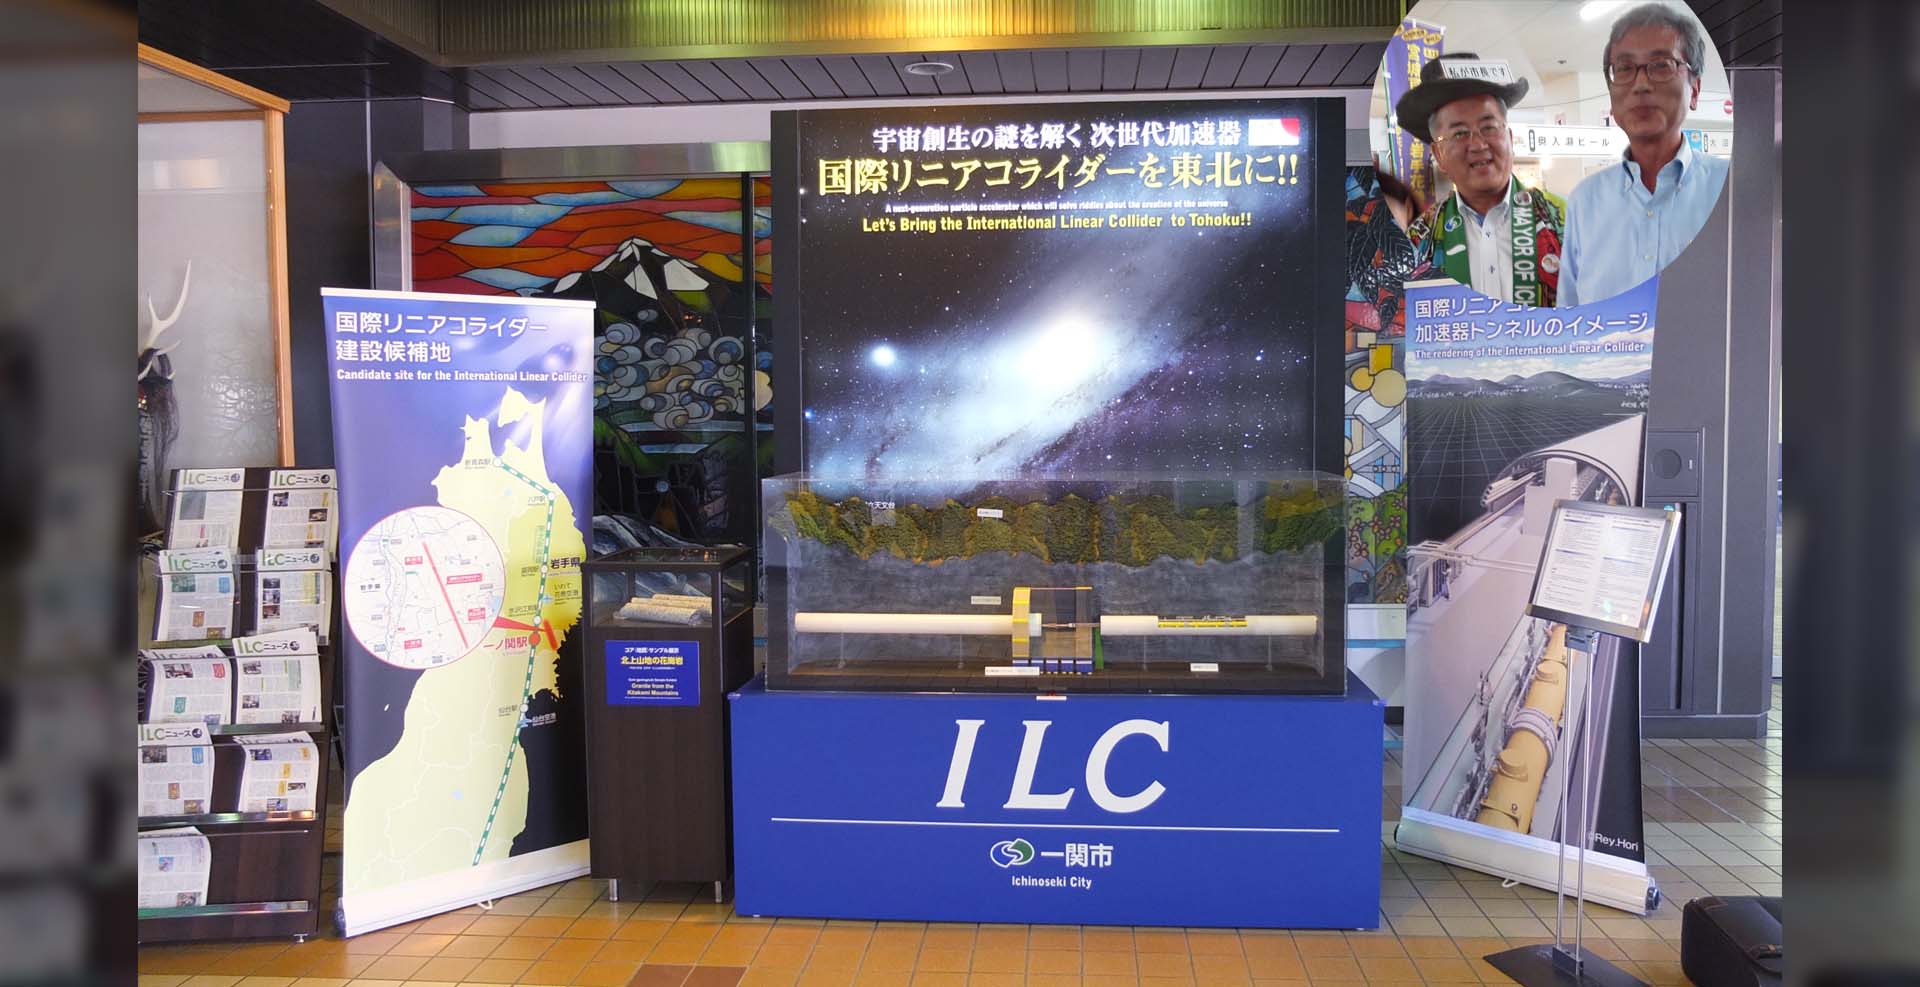 一ノ関駅に設置されたILC誘致のディスプレイ。右上写真内、 左が勝部修さん（前一関市長）、右が筆者。